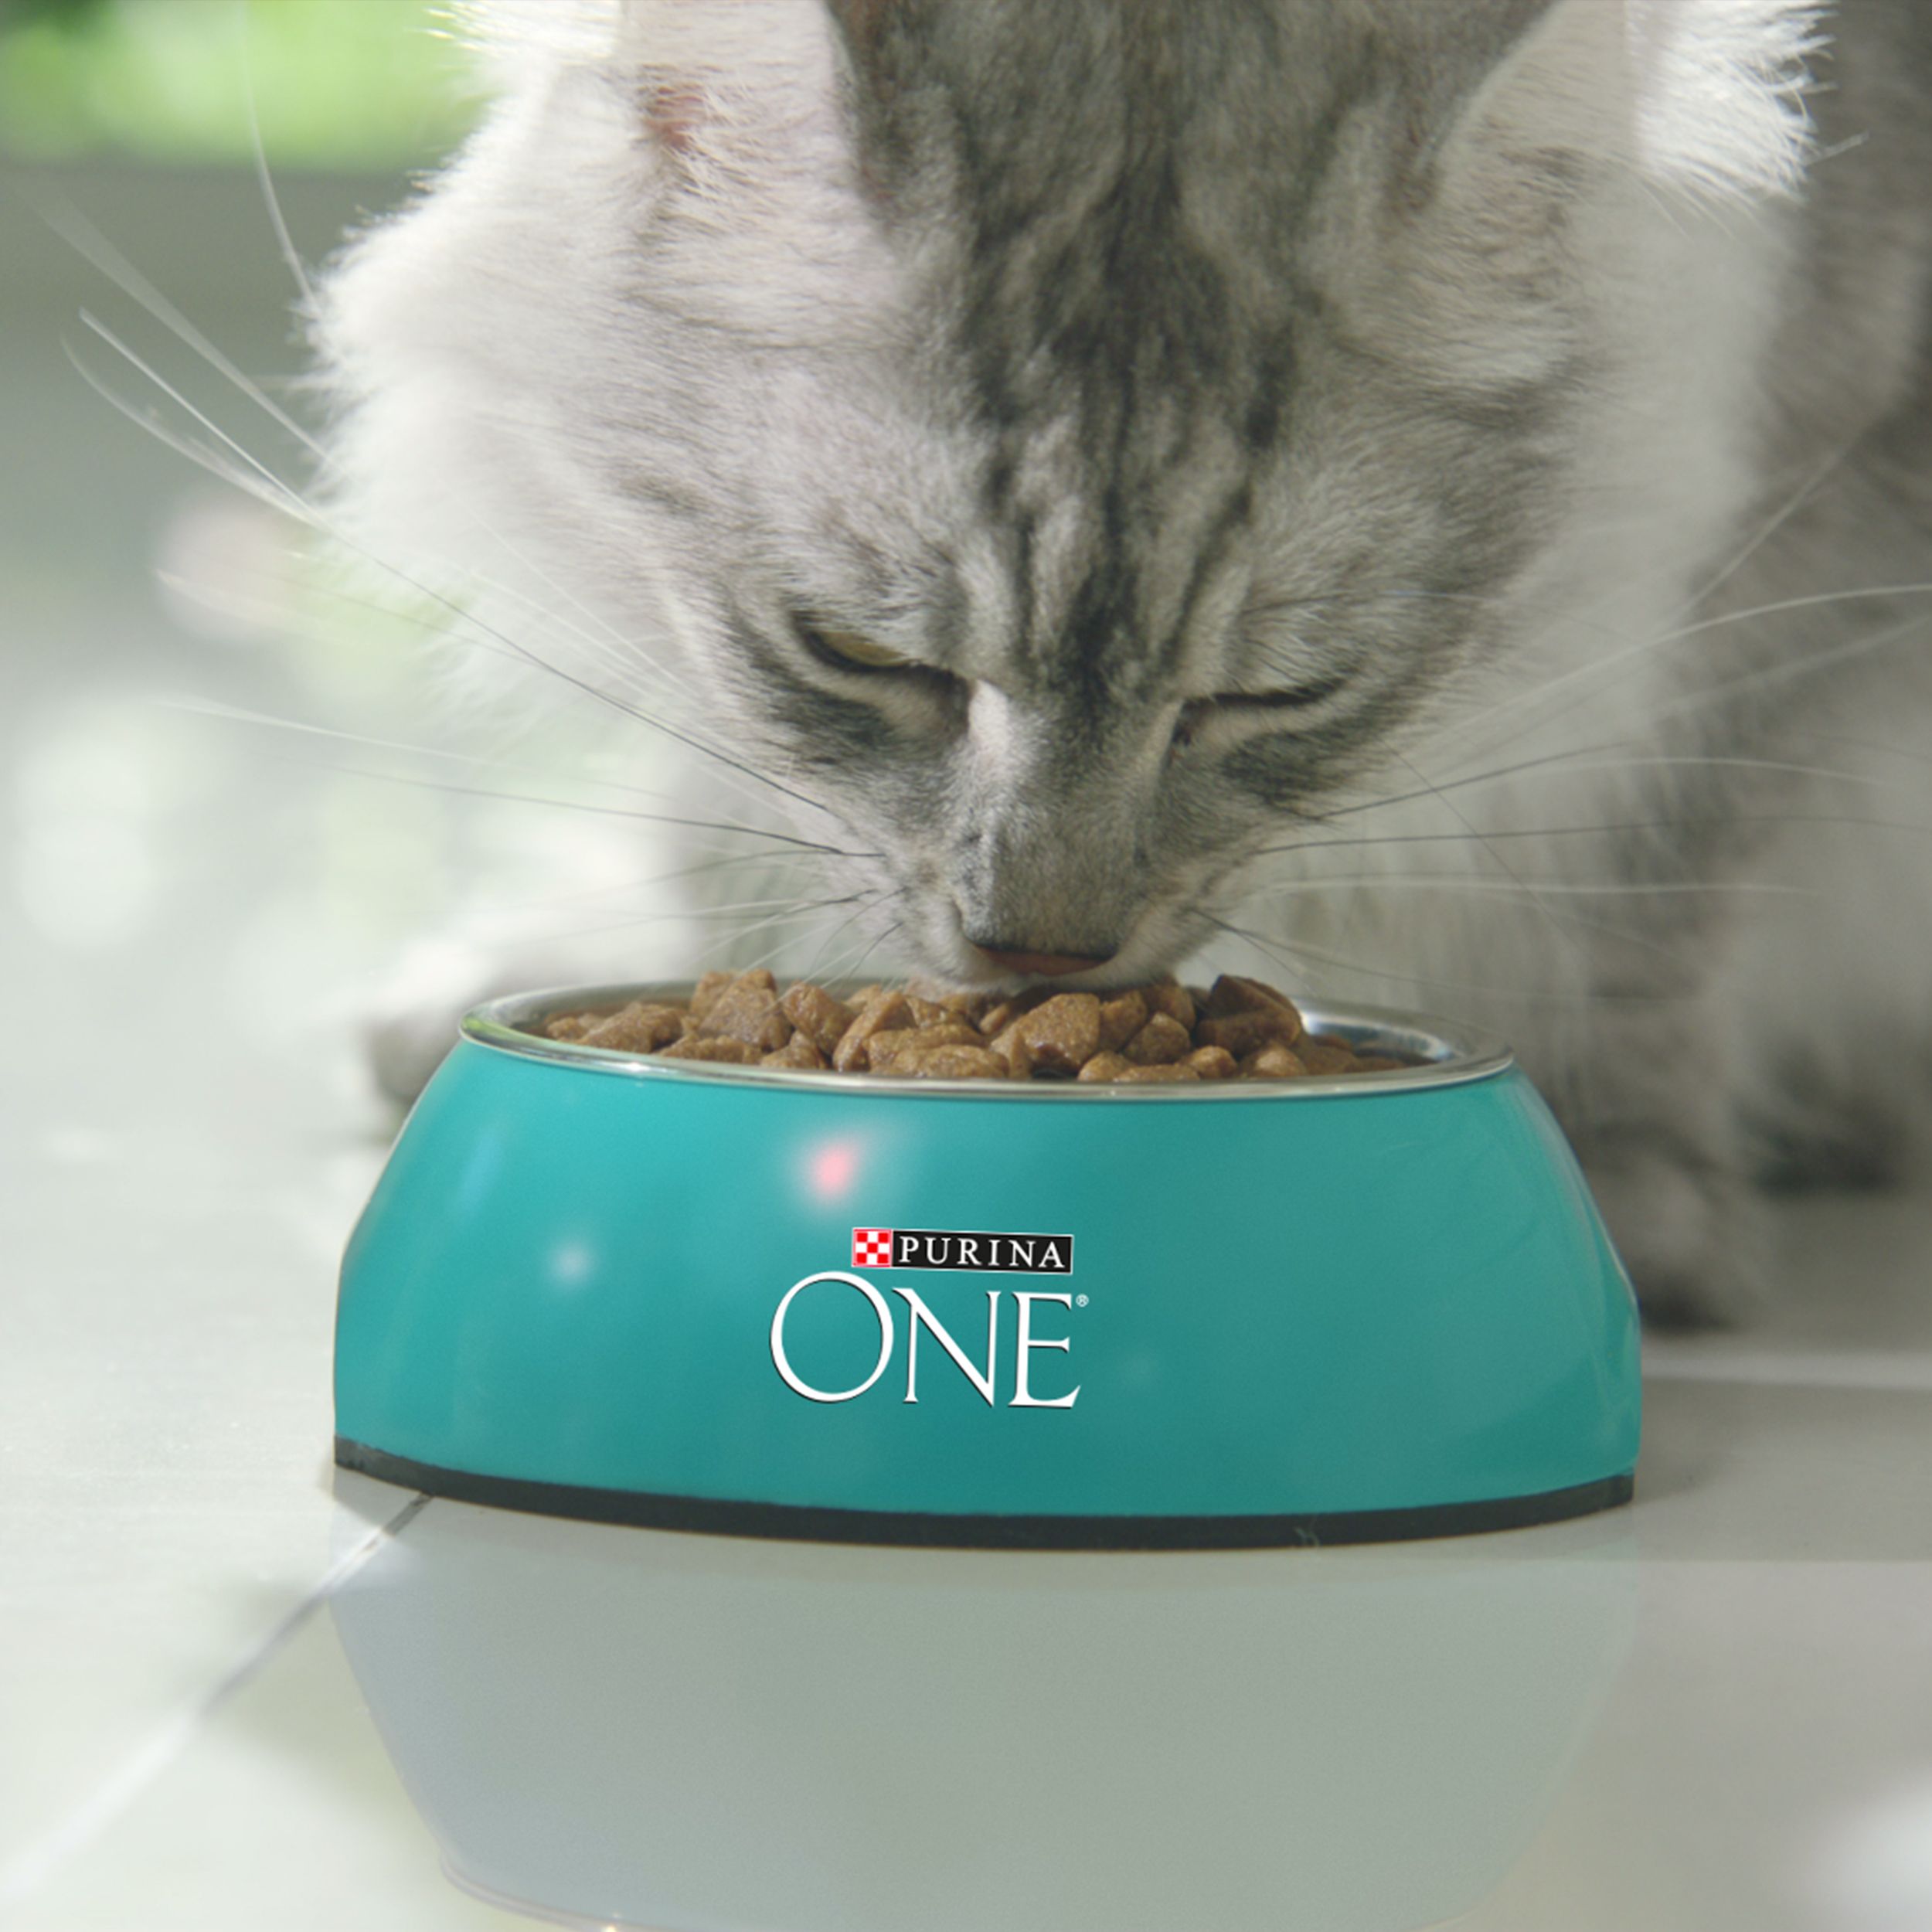 Сухой корм Purina ONE для домашних кошек с индейкой и цельными злаками, 1,5 кг